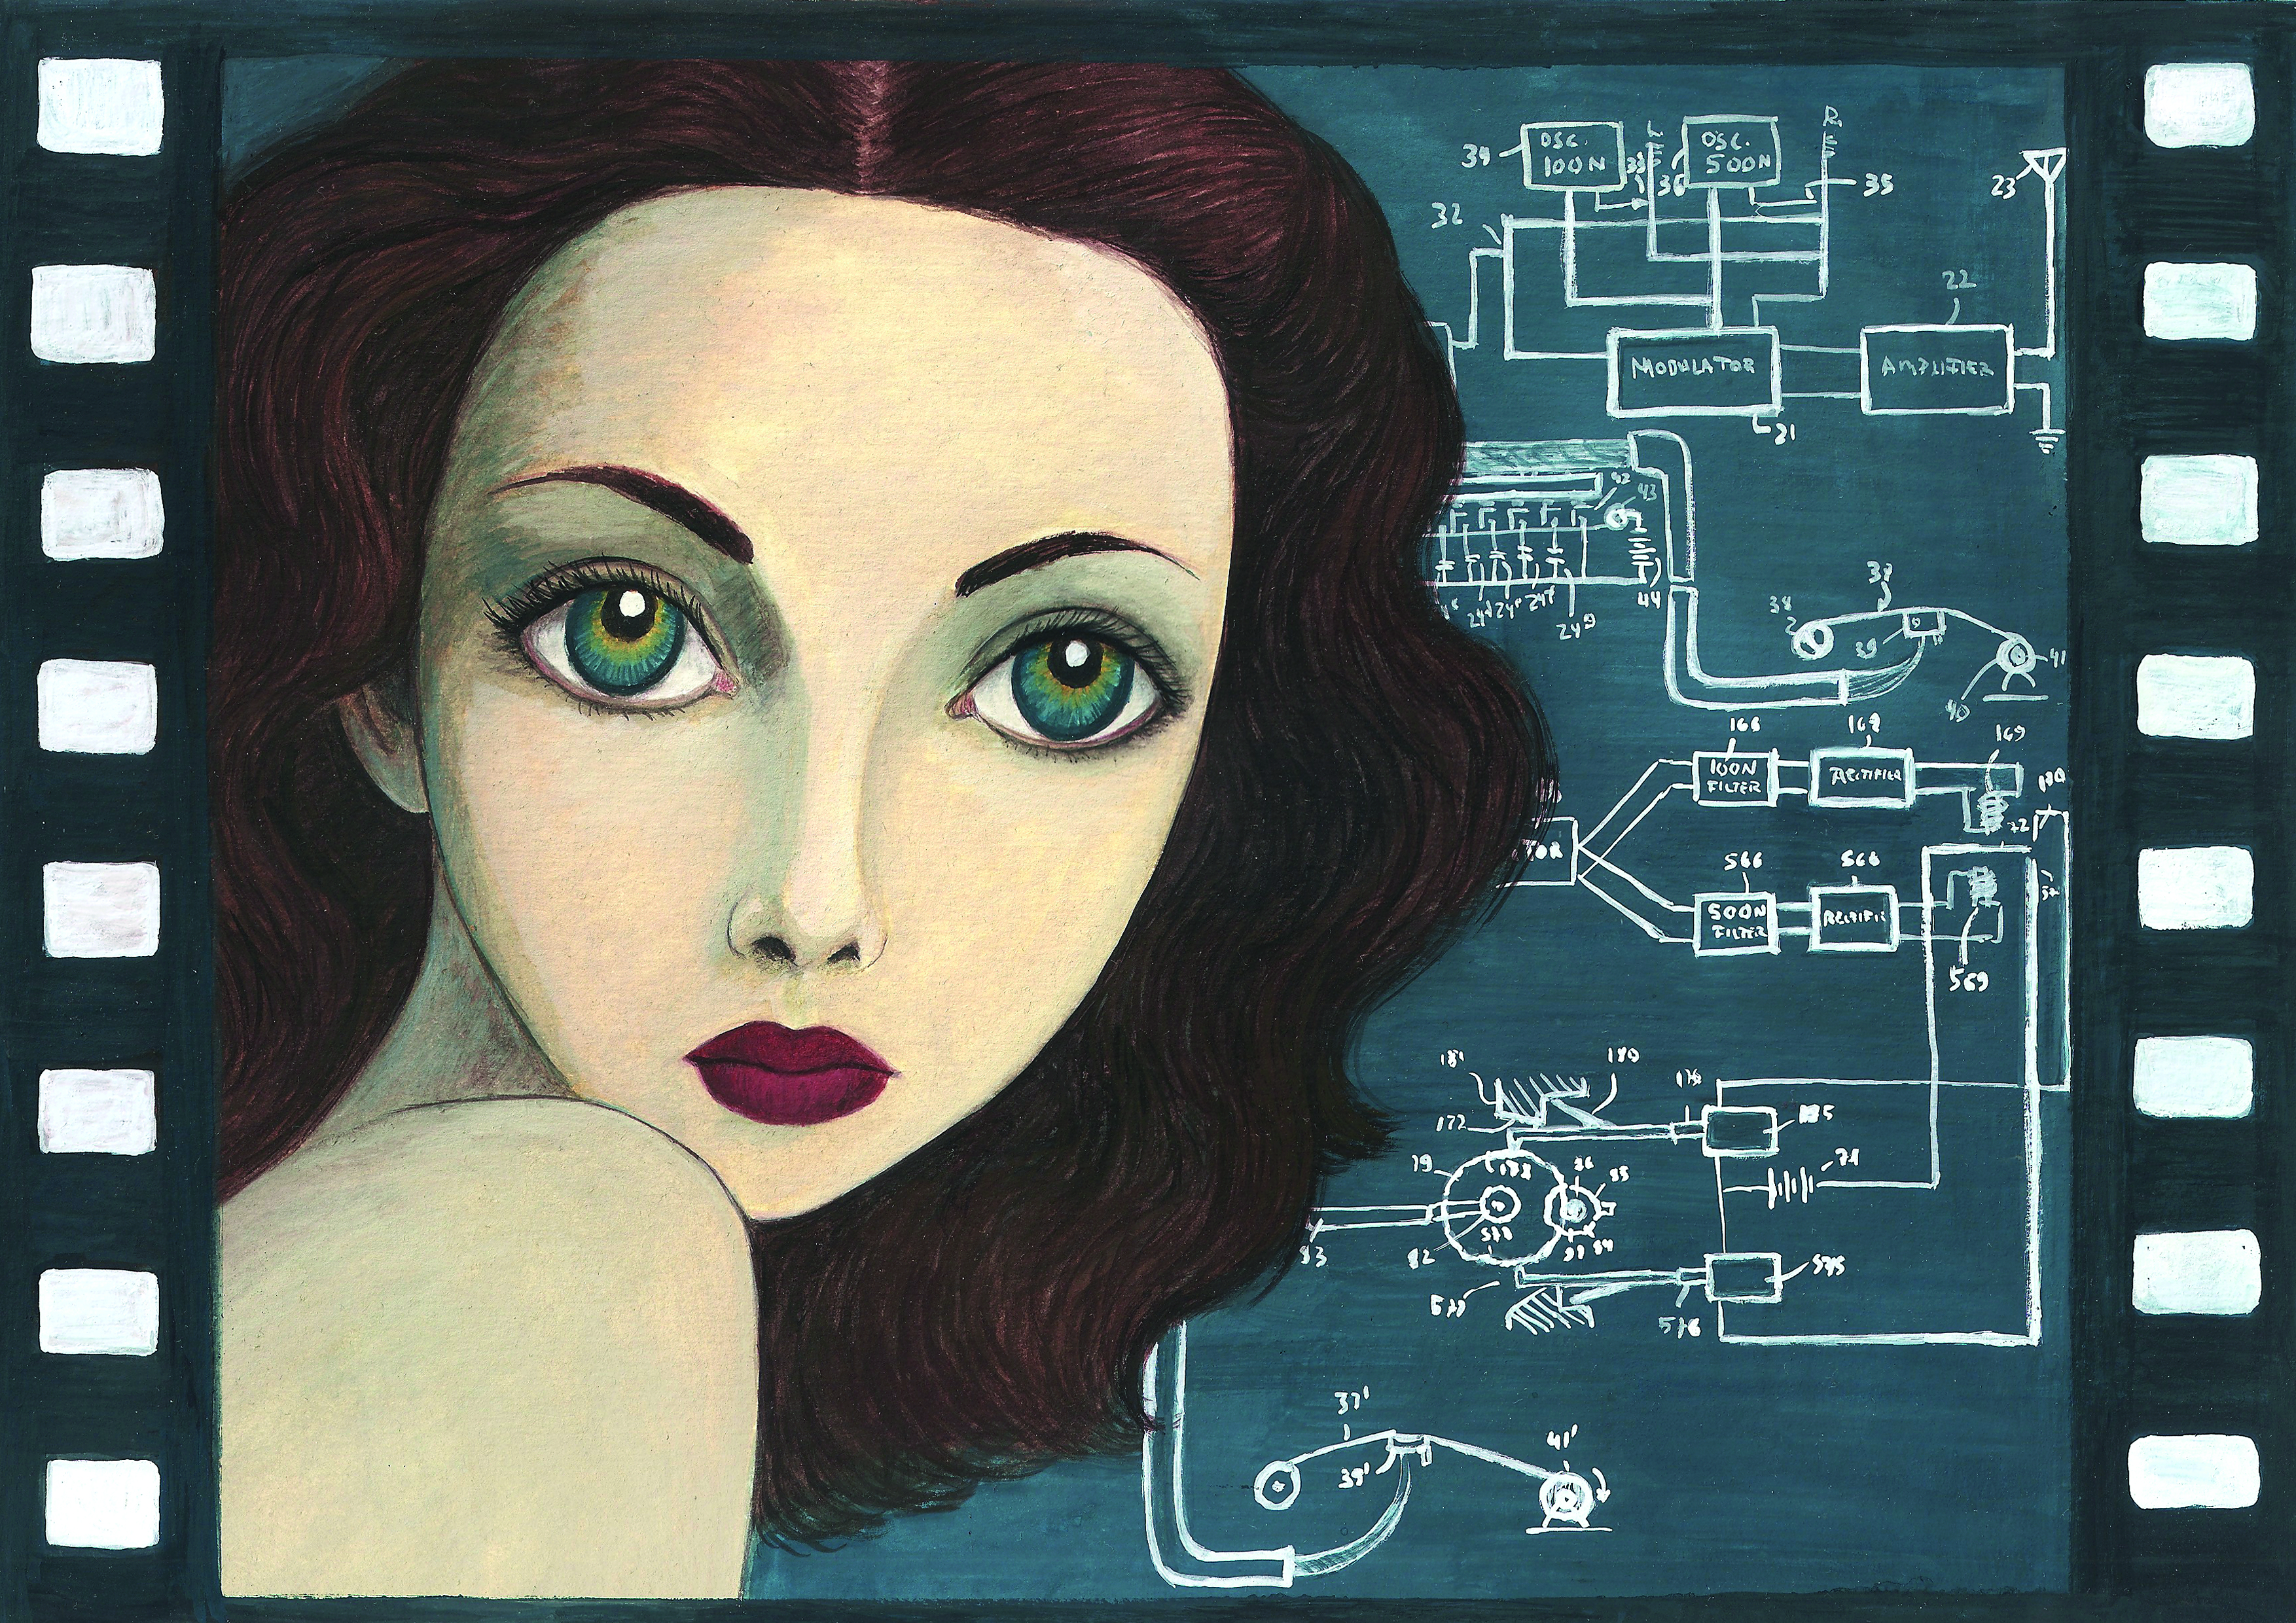 Ilustración de Hedy Lamarr, cortesía d'Isabel Ruiz Ruiz, publicada nel llibru Mujeres, nº 2